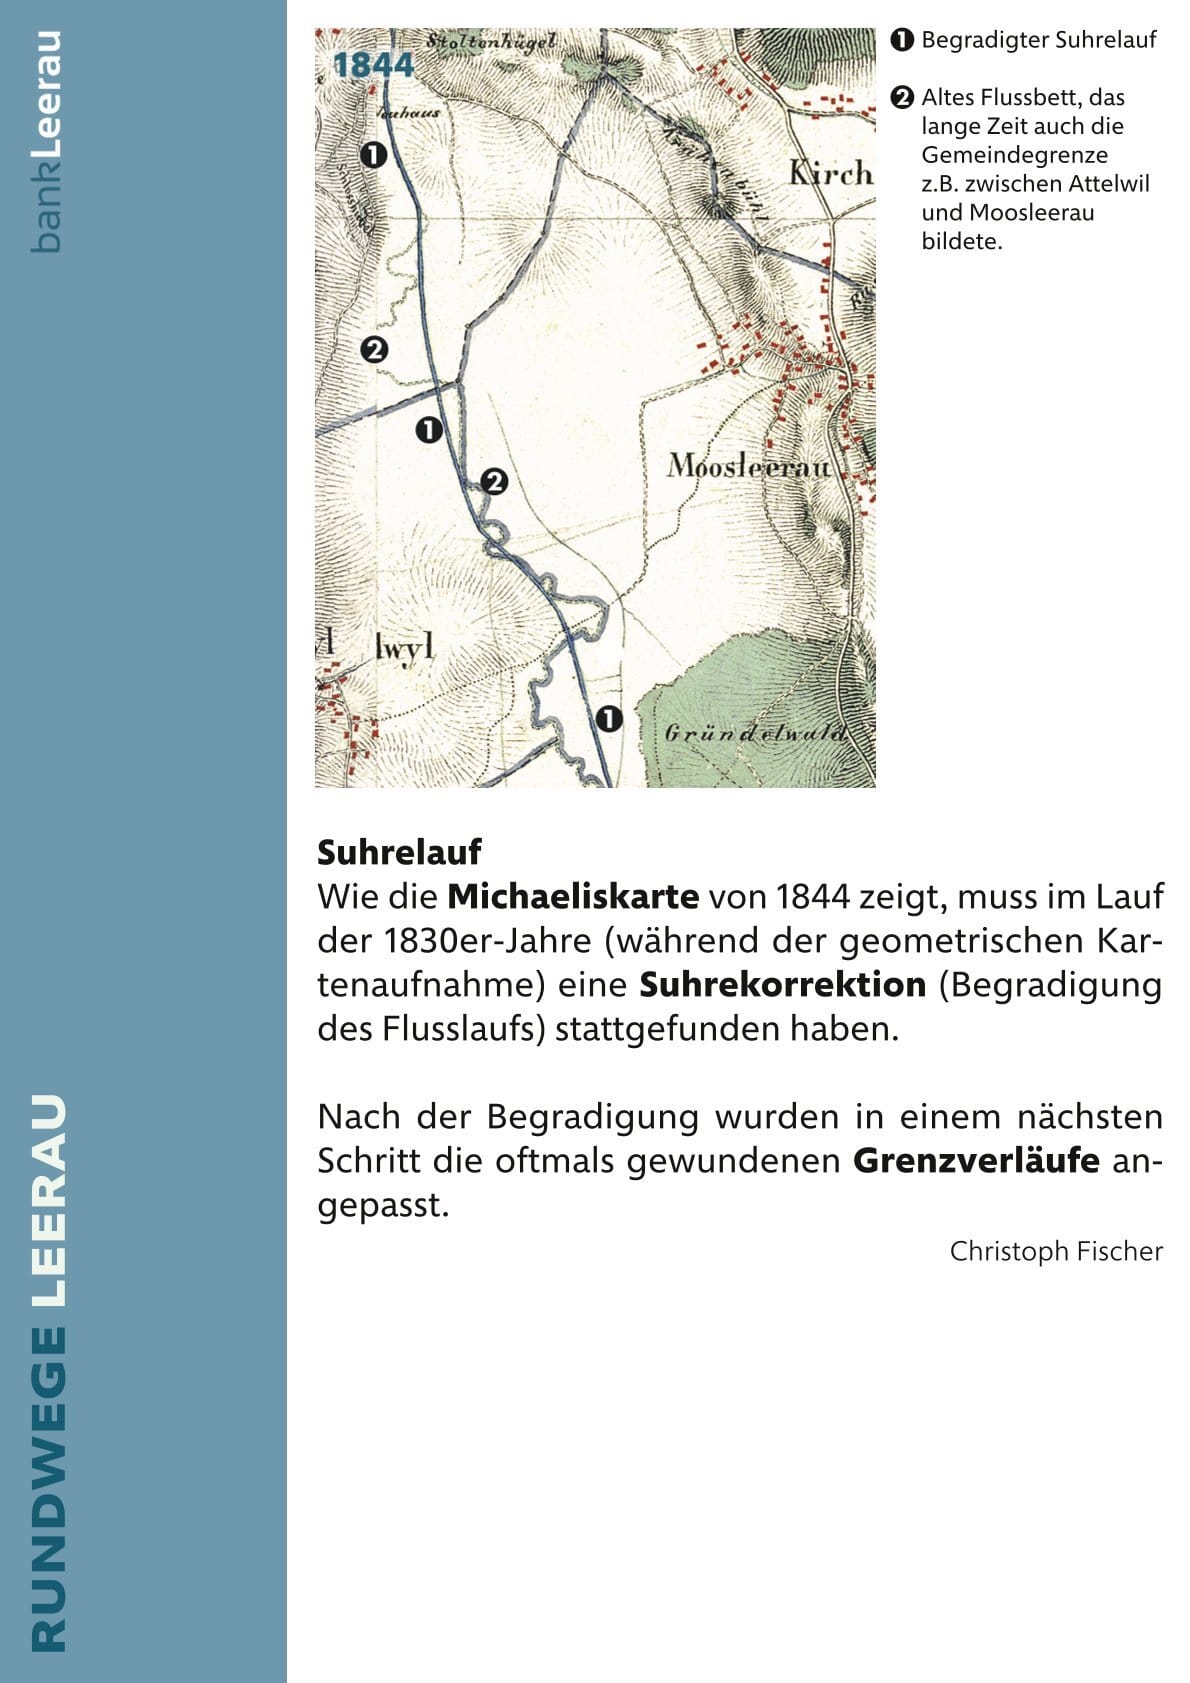 5 Gründelwald Seite 2